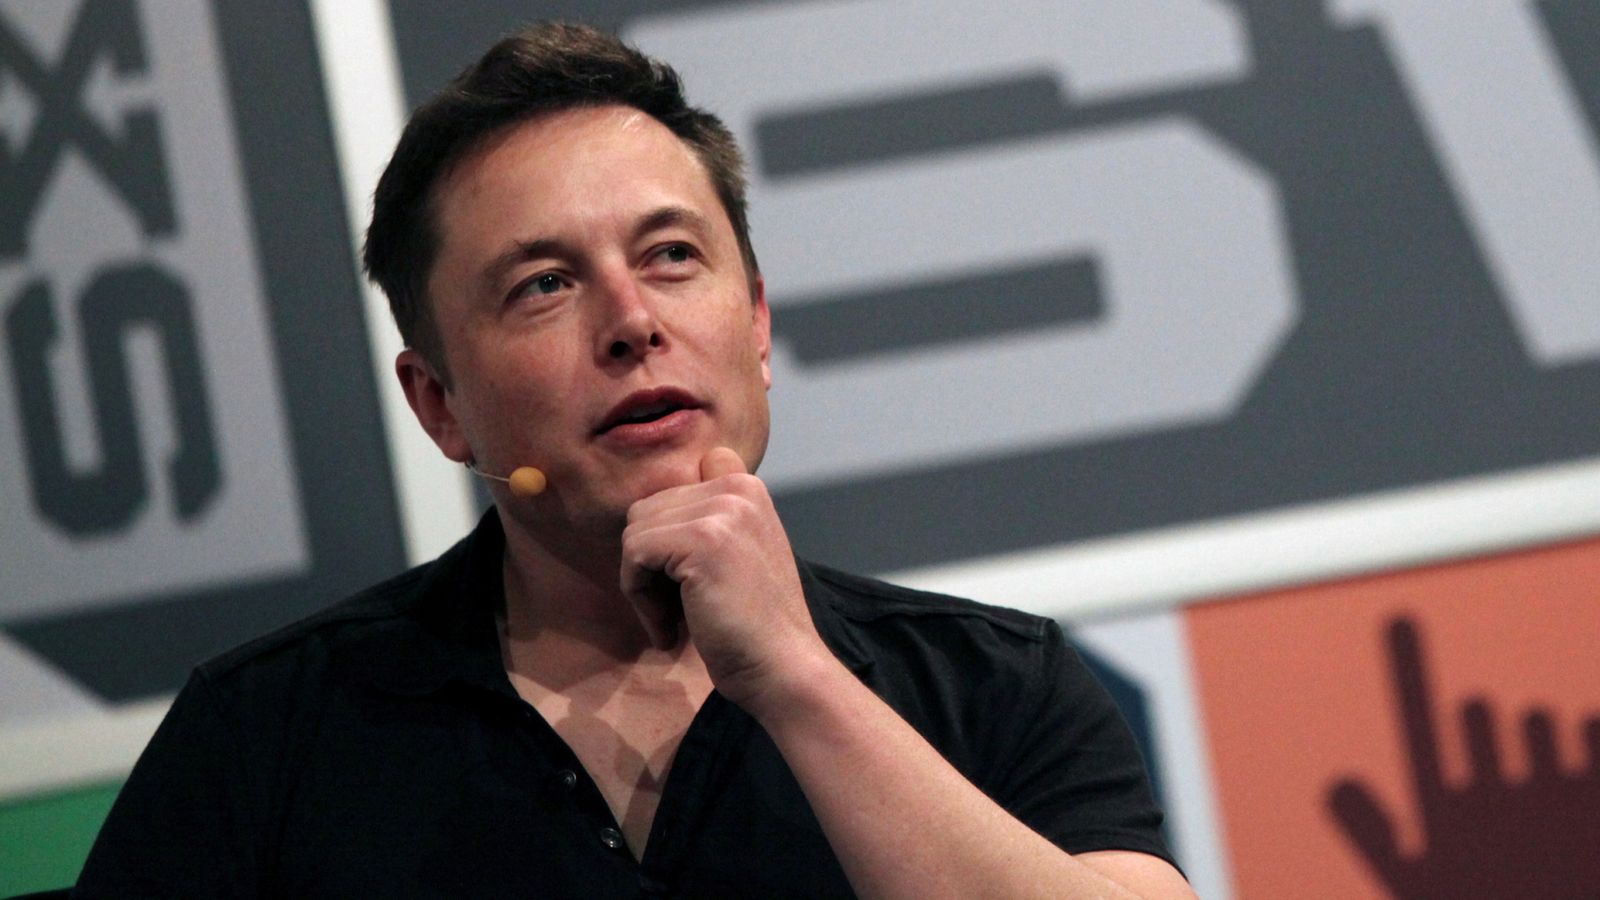 Elon Musk et Tesla accusent les régulateurs d’essayer de “refroidir” les droits à la liberté d’expression |  Actualité économique